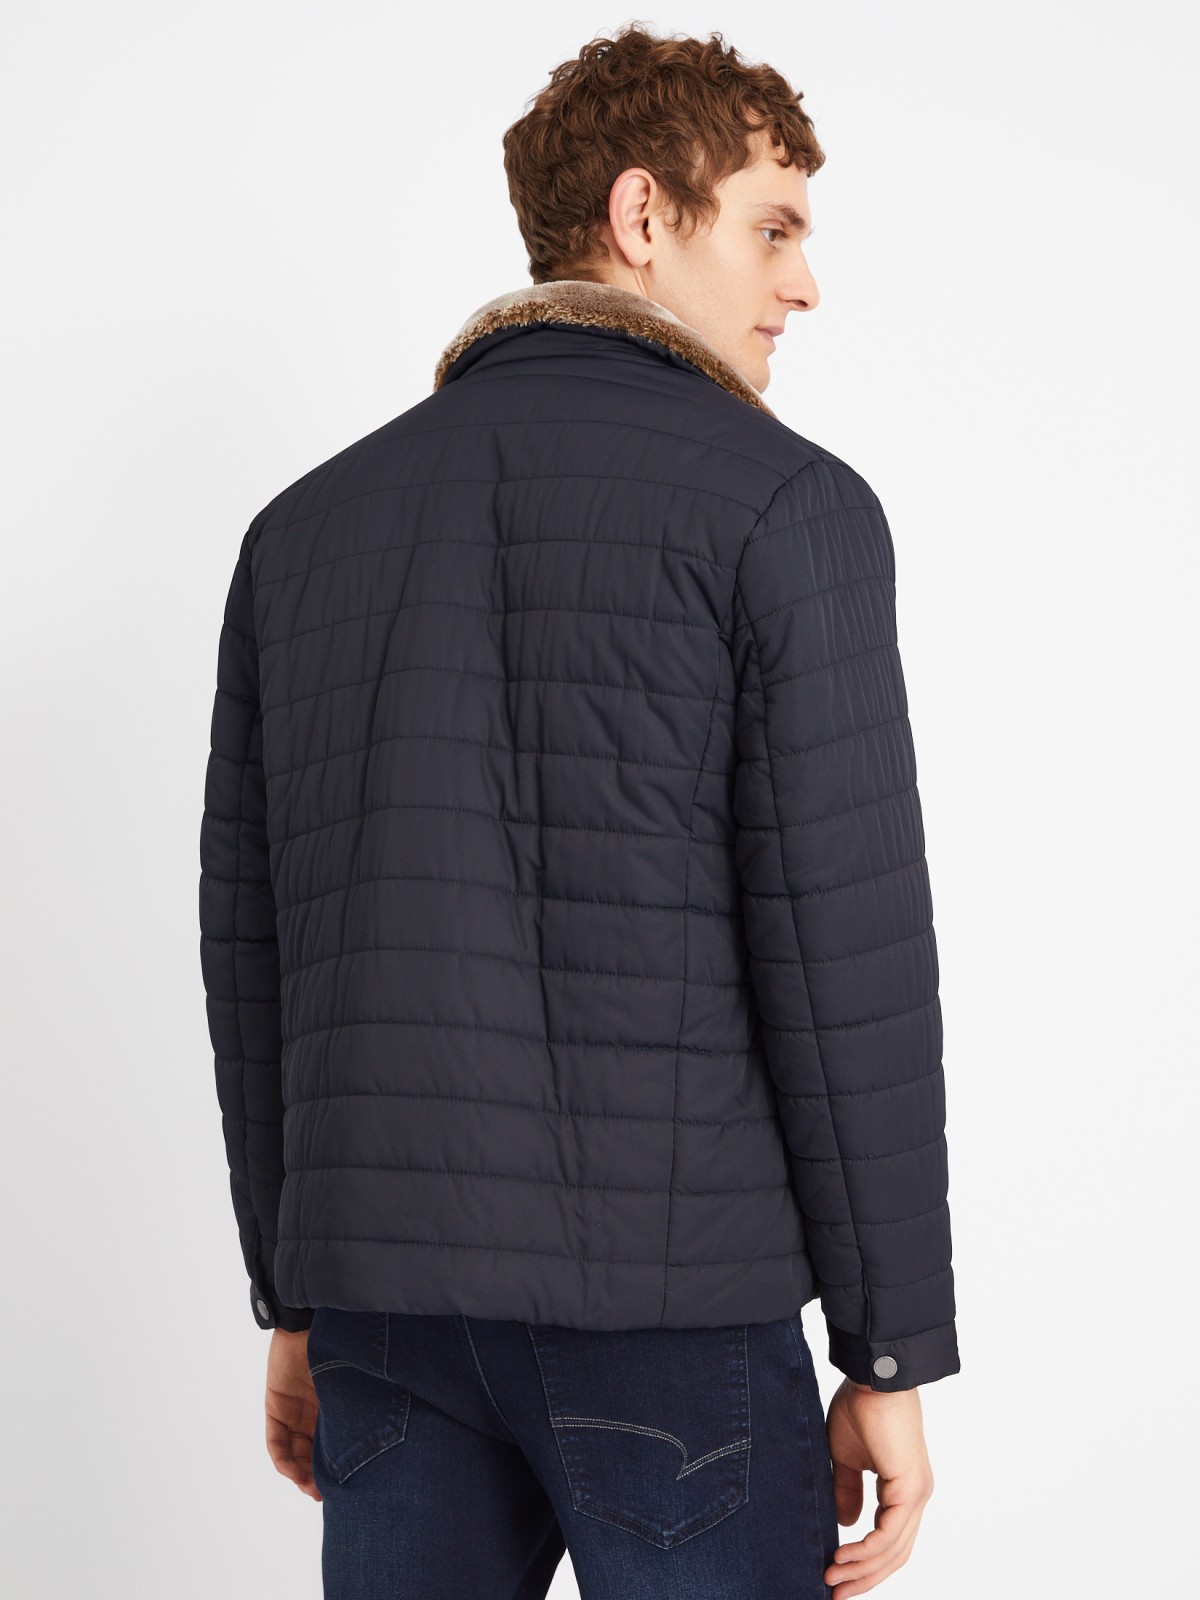 Тёплая стёганая куртка-косуха с подкладкой из экомеха на синтепоне